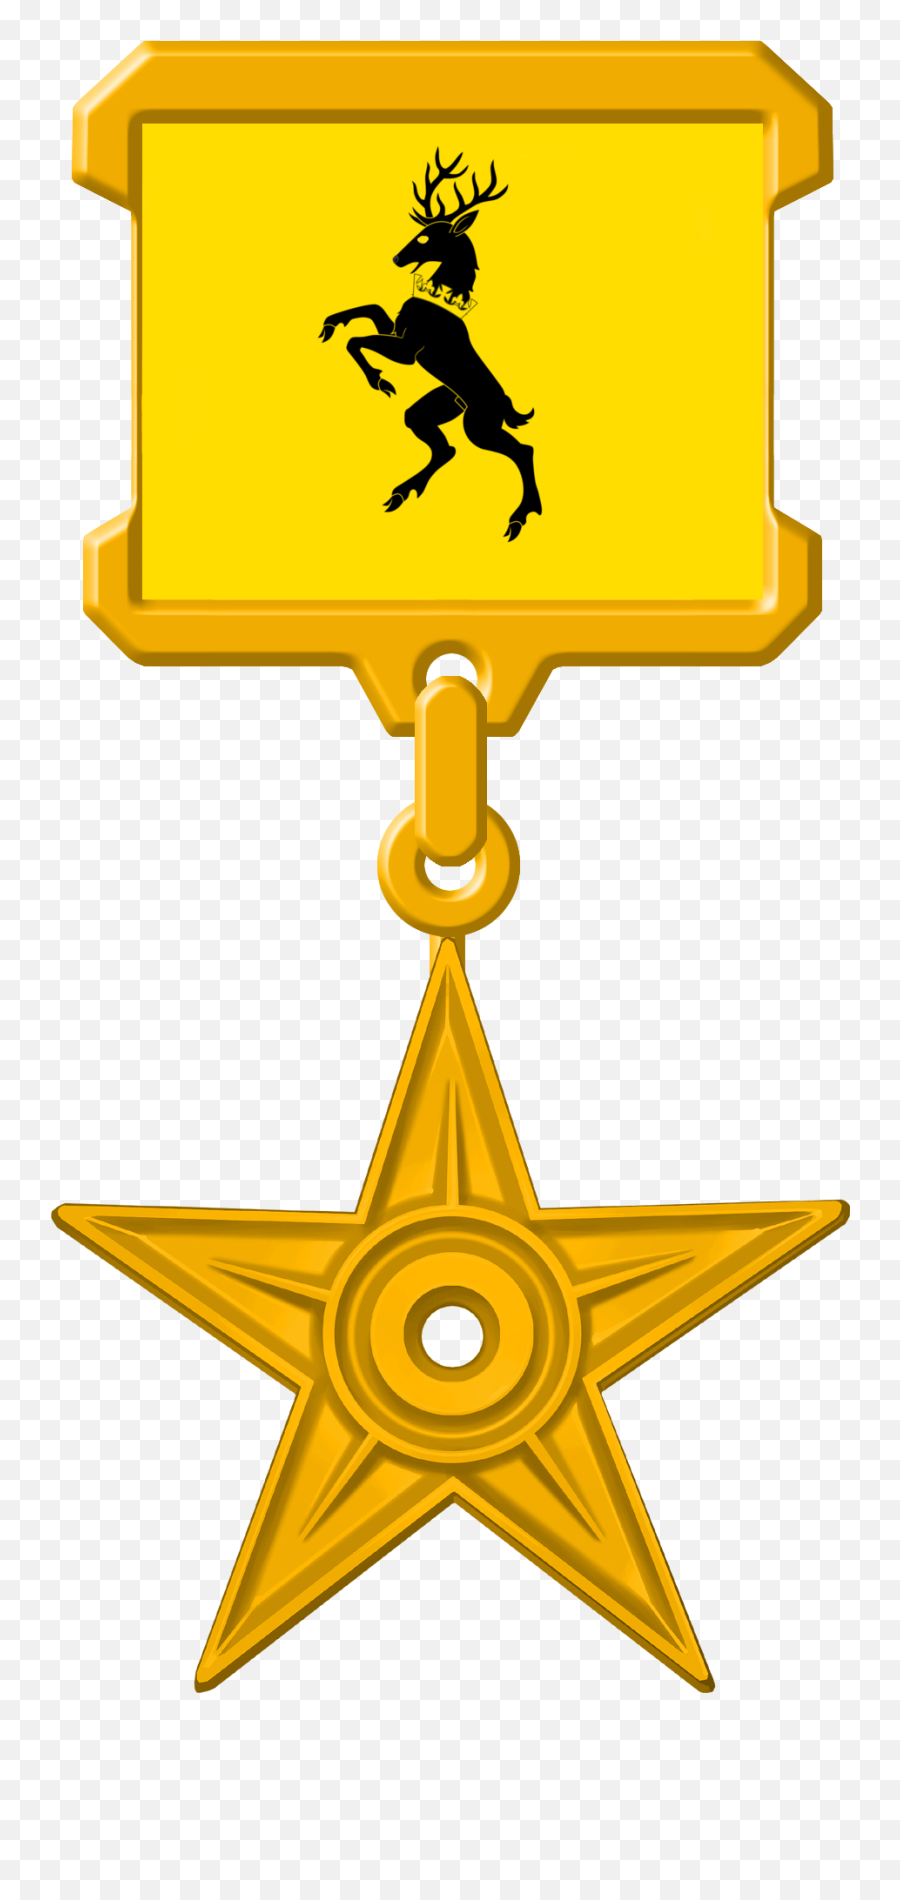 Got Baratheon Gold Medal - Bendera Komunis Di Amerika Png,Gold Medal Png